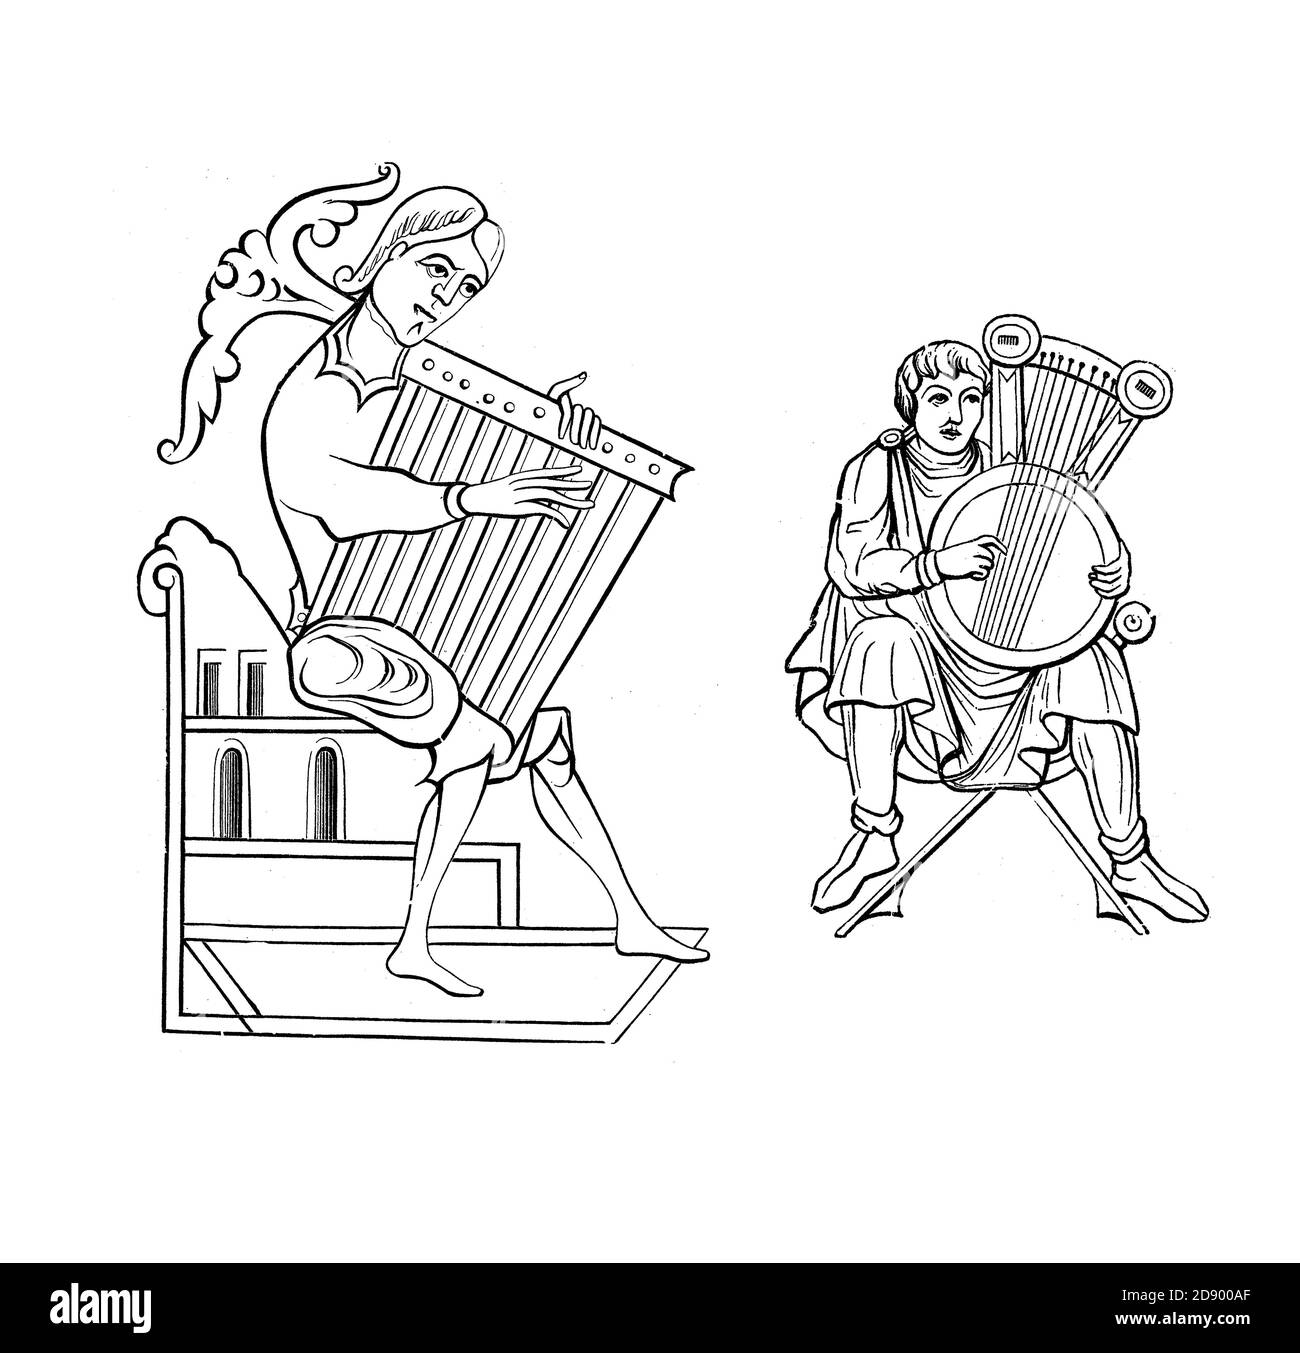 Salteria medievale, arpa-come strumento musicale del 9 ° (a sinistra) e 12 ° secolo Foto Stock